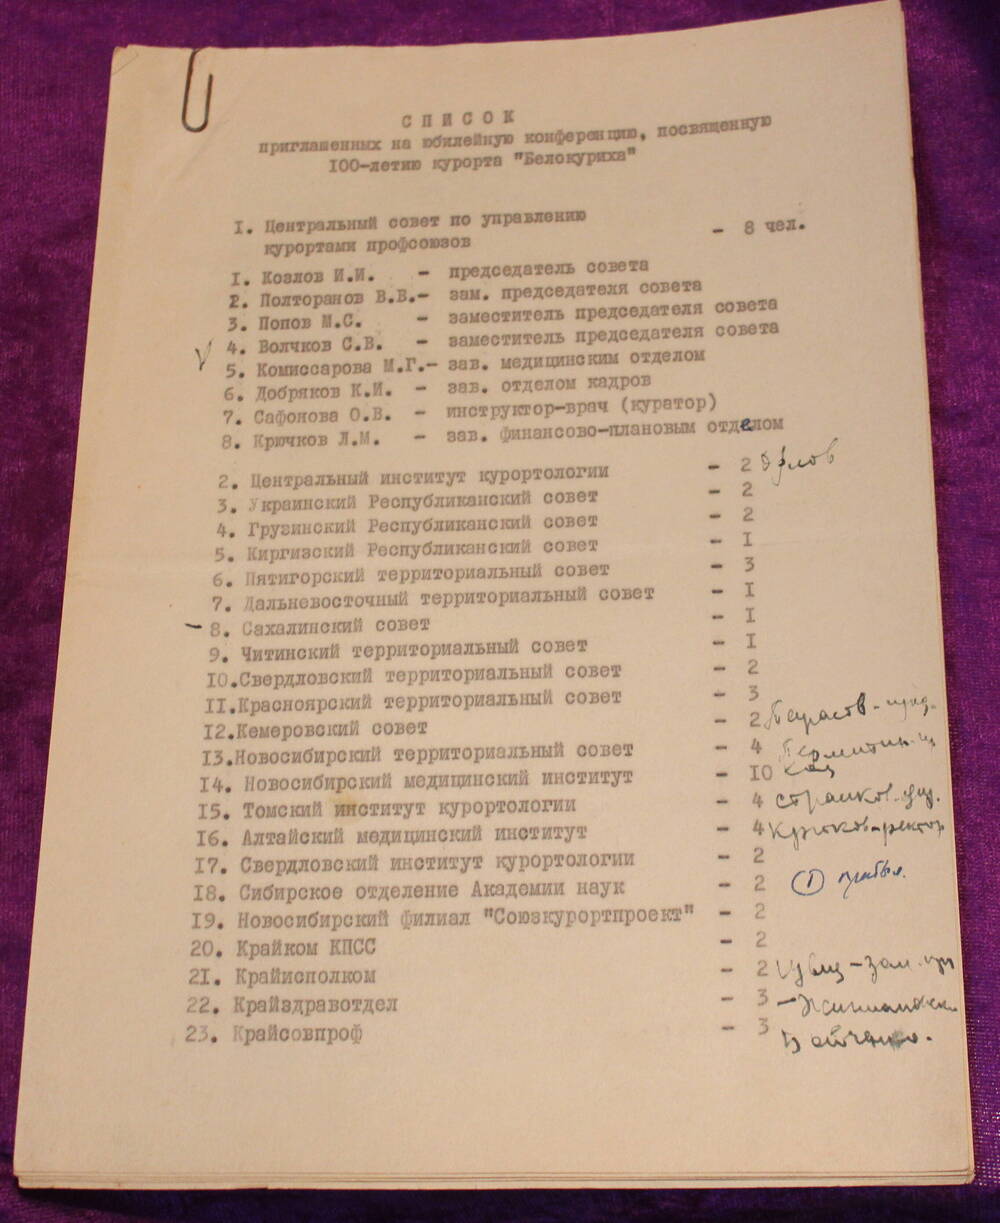 Документ из коллекции 100-летие курорта Белокуриха, 100-летие со дня рождения В.И. Ленина